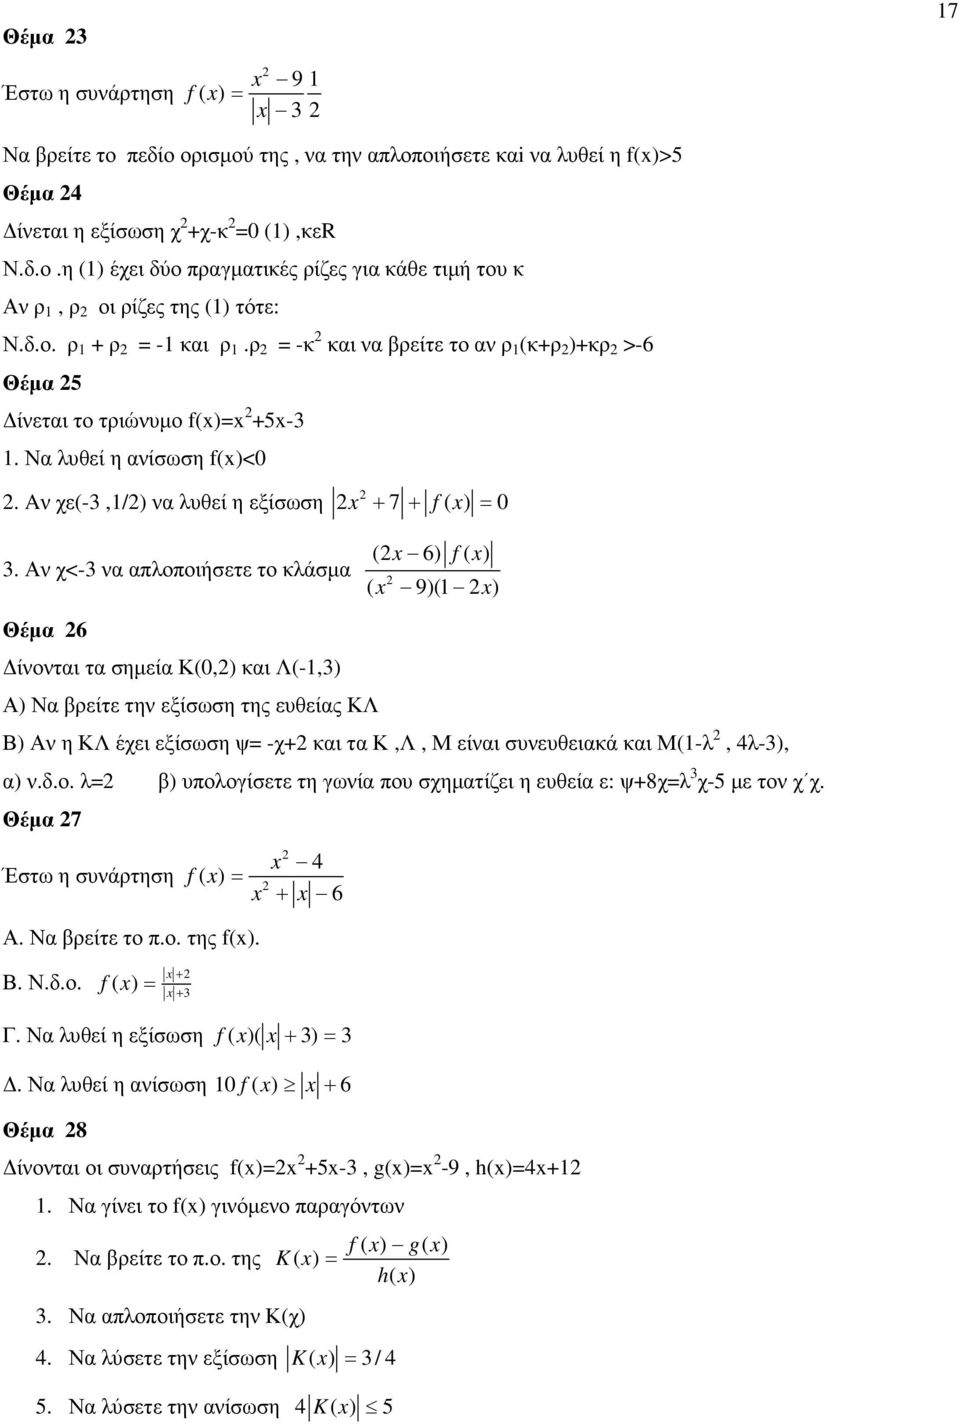 Αν χ<-3 να απλοποιήσετε το κλάσµα ( x 9)(1 x) Θέµα 6 ίνονται τα σηµεία Κ(0,) και Λ(-1,3) Α) Να βρείτε την εξίσωση της ευθείας ΚΛ Β) Αν η ΚΛ έχει εξίσωση ψ -χ+ και τα Κ,Λ, Μ είναι συνευθειακά και